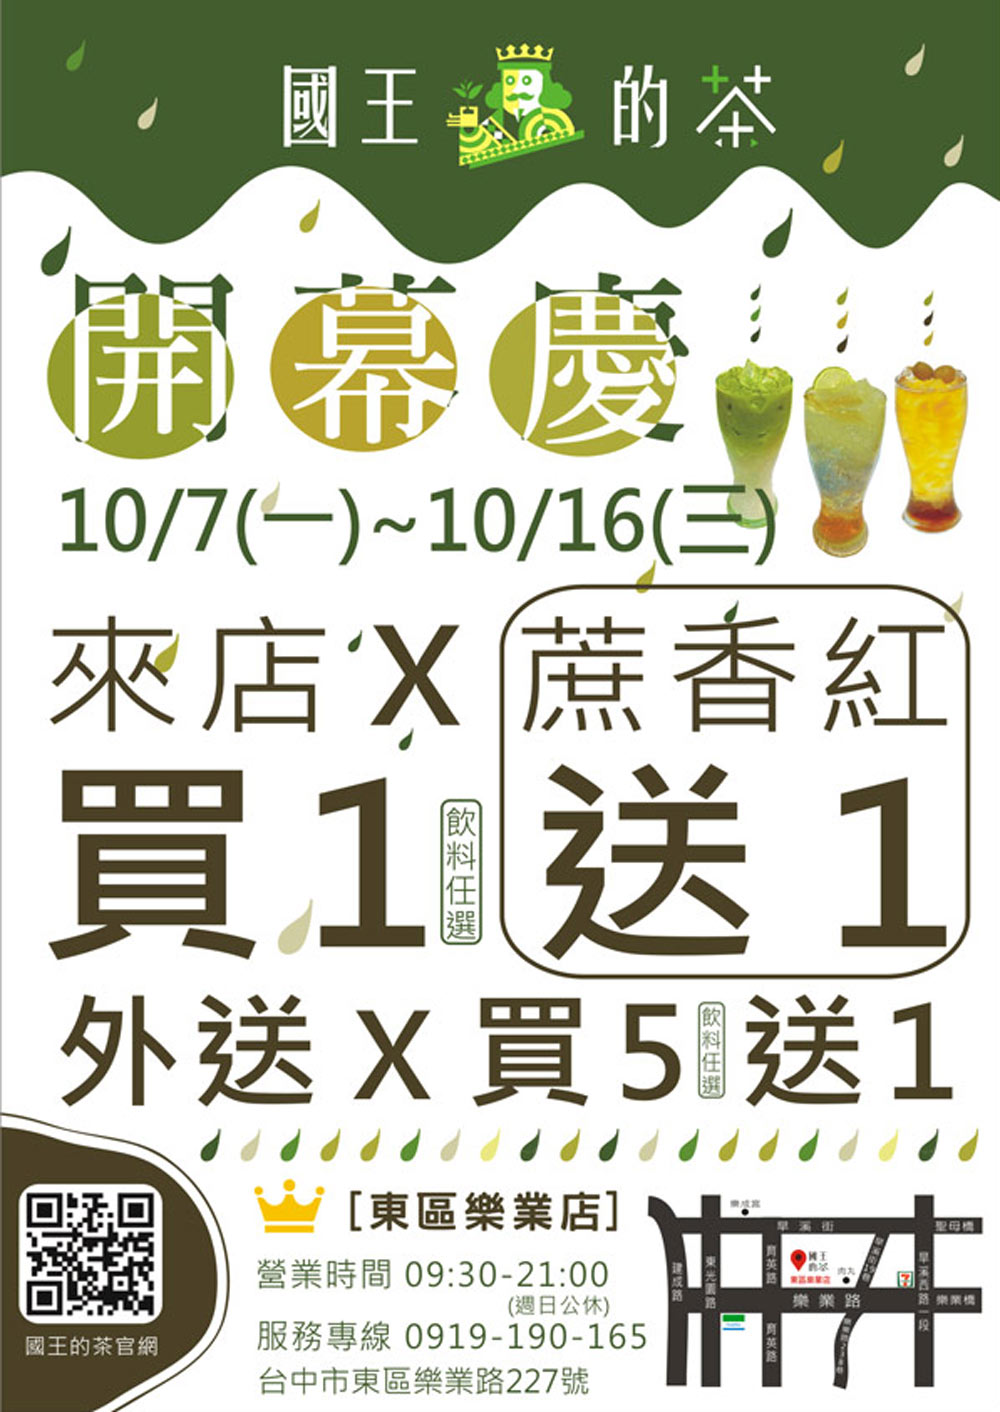 歡慶國王的茶【東區樂業店】即將開幕，快點開看看有什麼好康優惠等你呢~